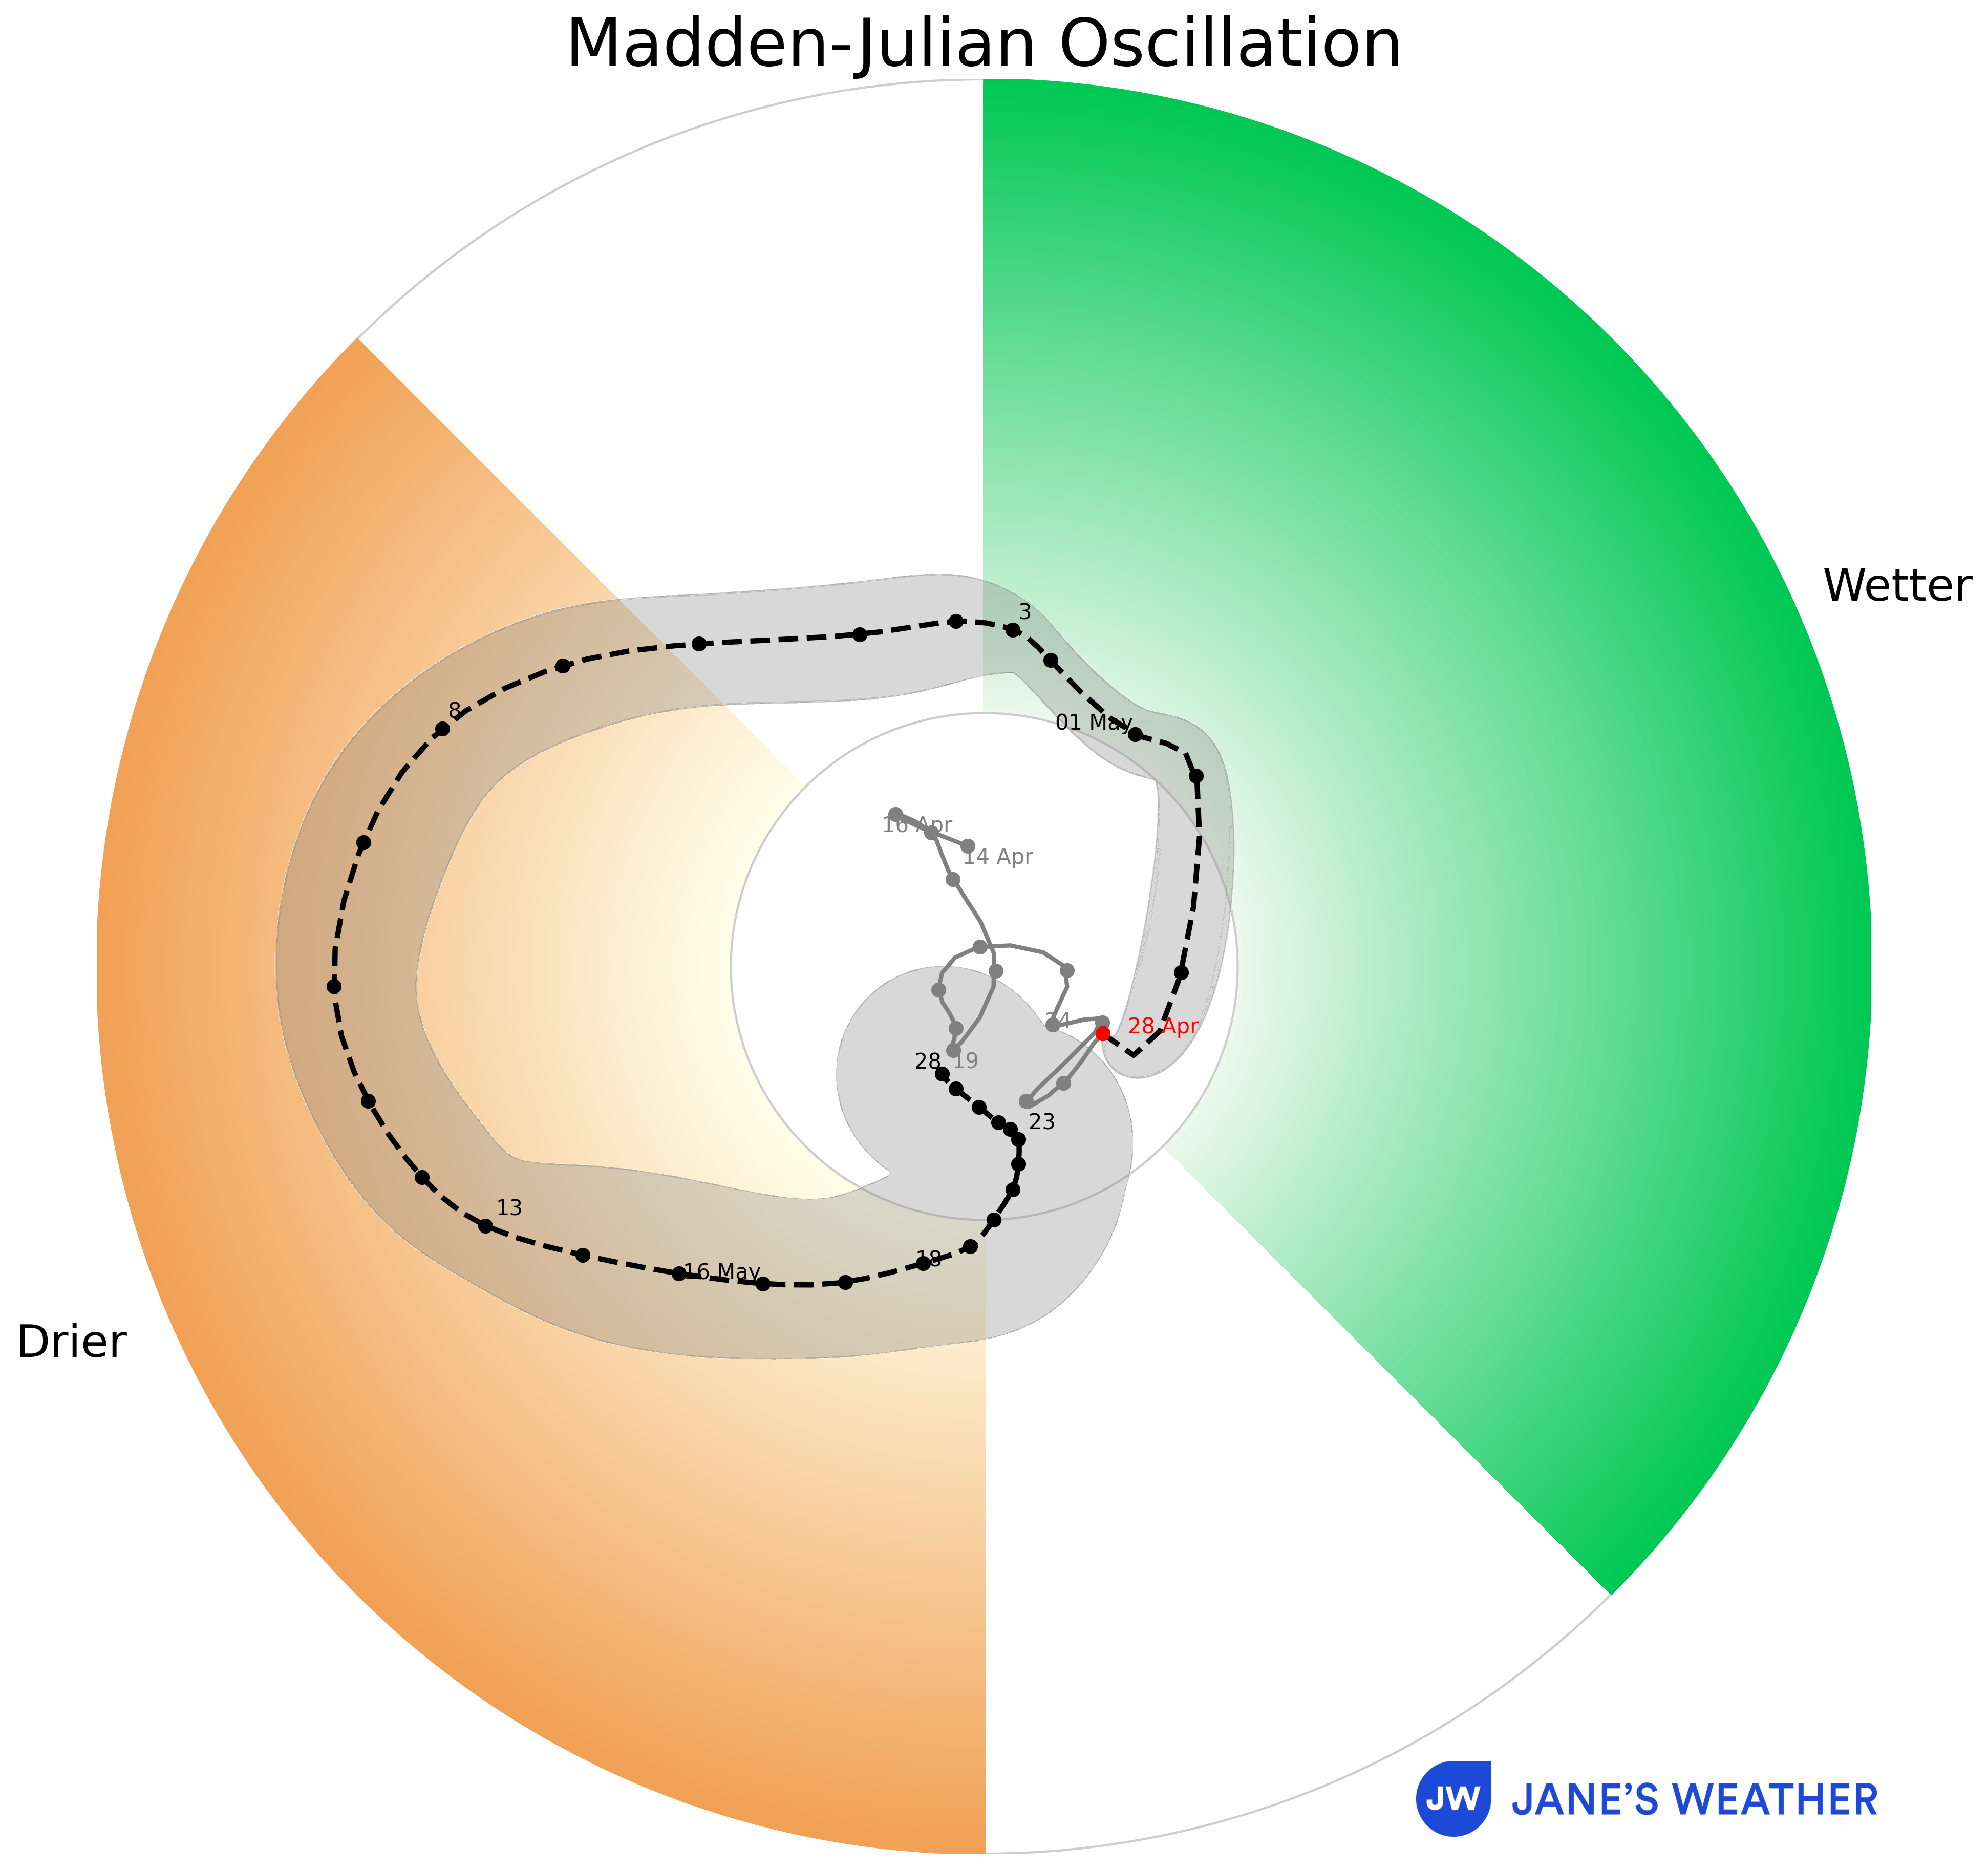 Madden Julian Oscillation (MJO)